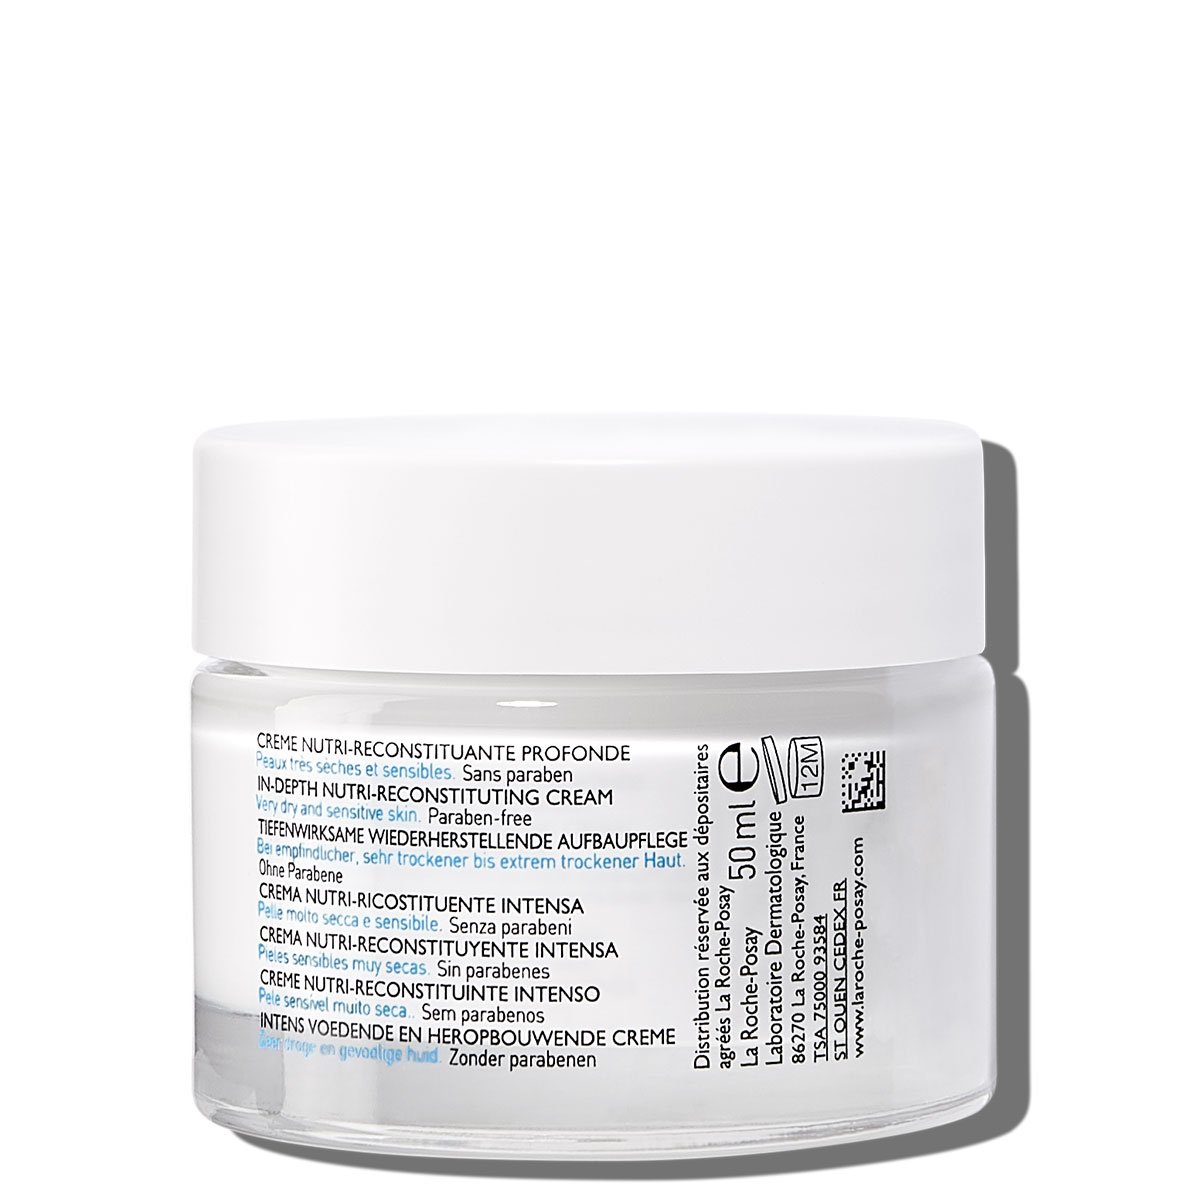 La Roche Posay Produktsida Ansiktsvård Nutritic Intense Rich Cream 50ml 